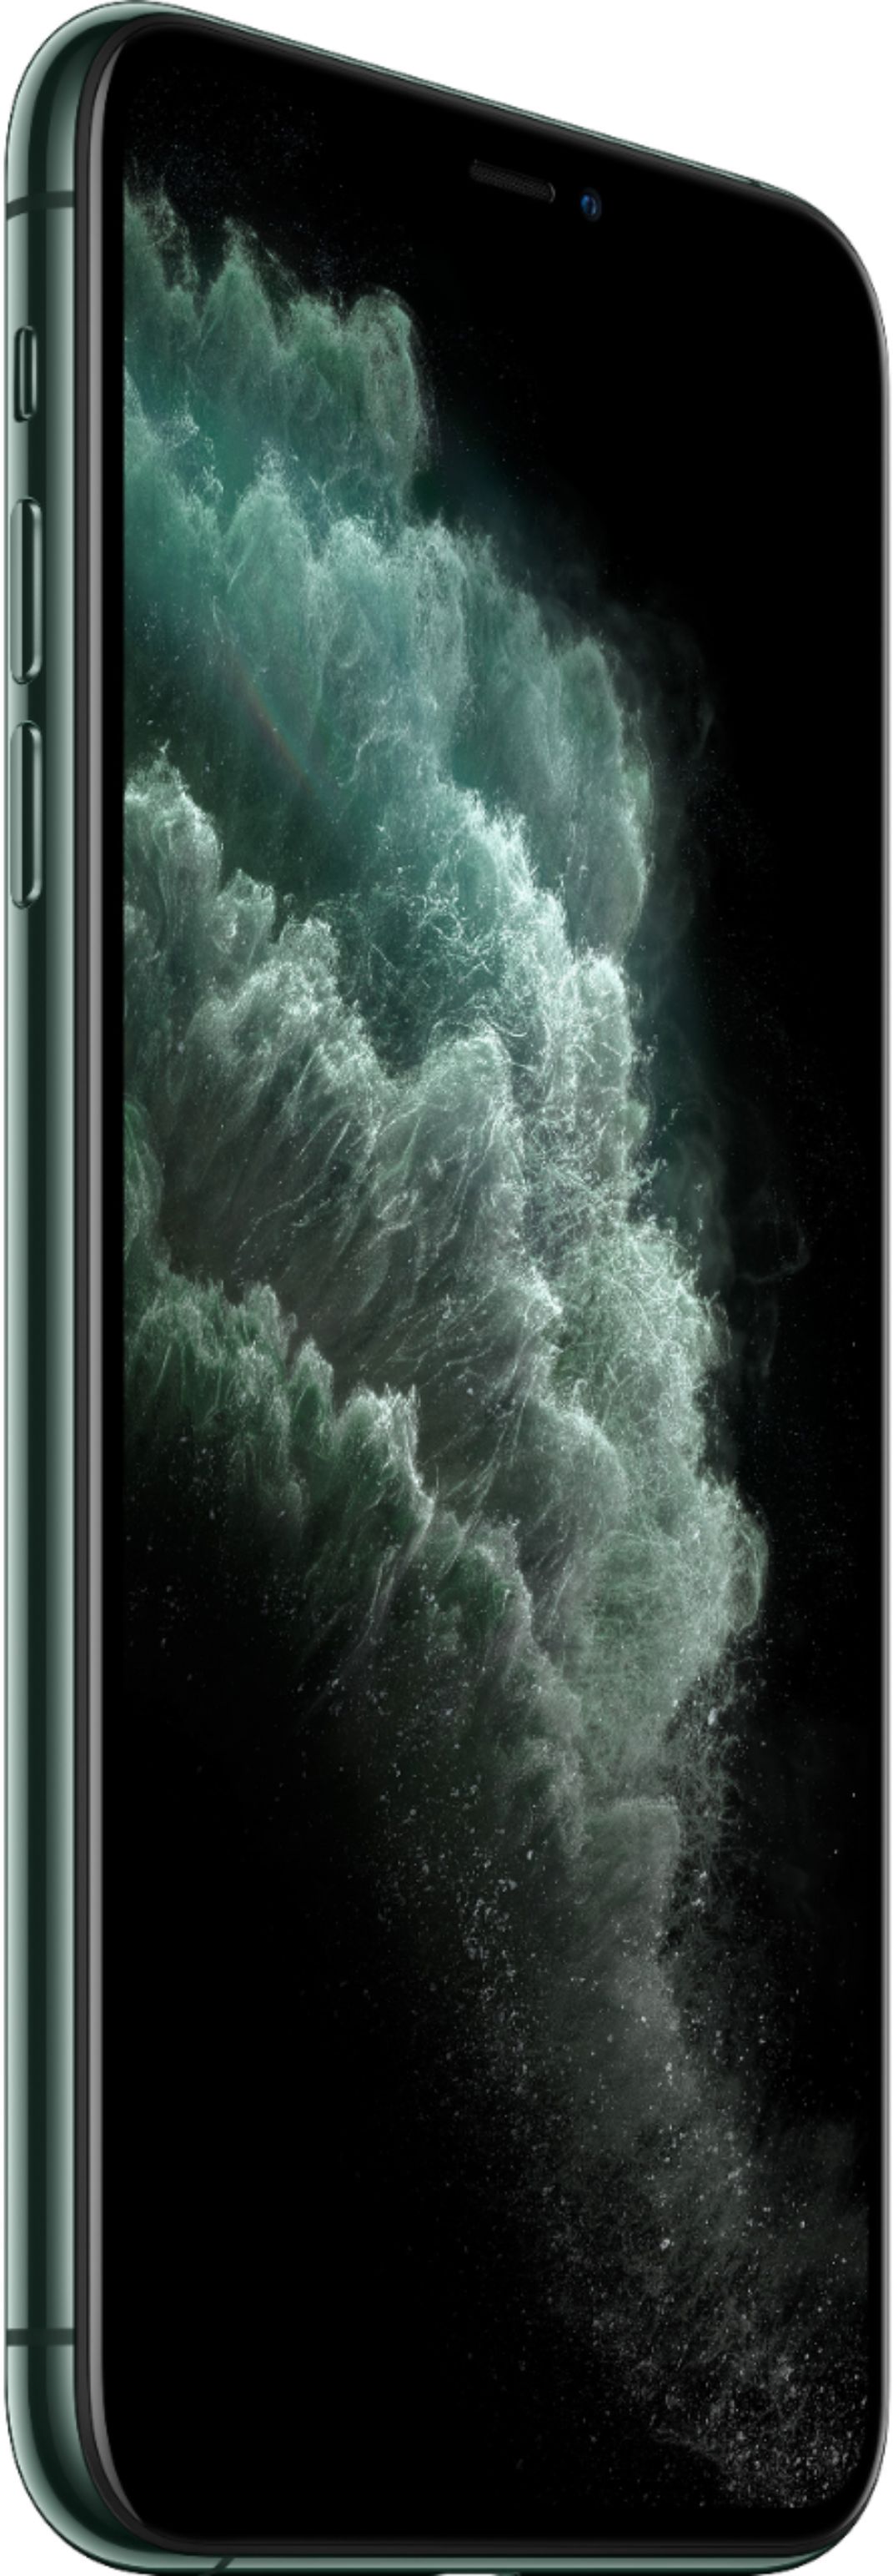 スマホアクセサリー iPhone用ケース Best Buy: Apple iPhone 11 Pro Max 64GB Midnight Green (Sprint 